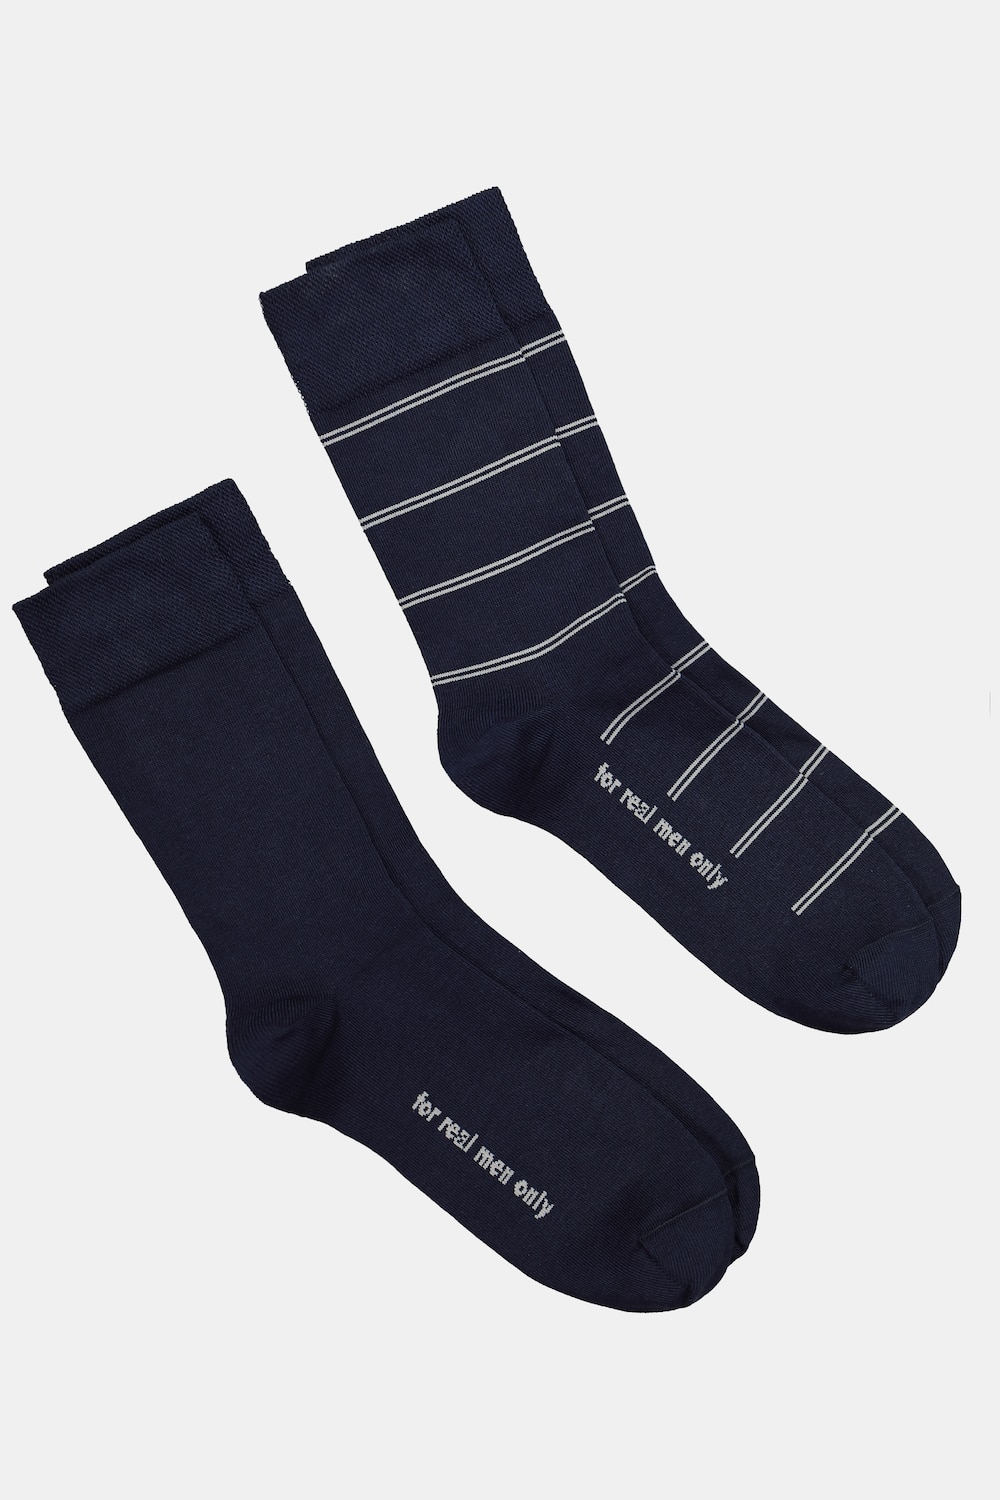 Große Größen JP1880 Socken, Herren, blau, Größe: 39-42, Baumwolle/Synthetische Fasern, JP1880 von JP1880